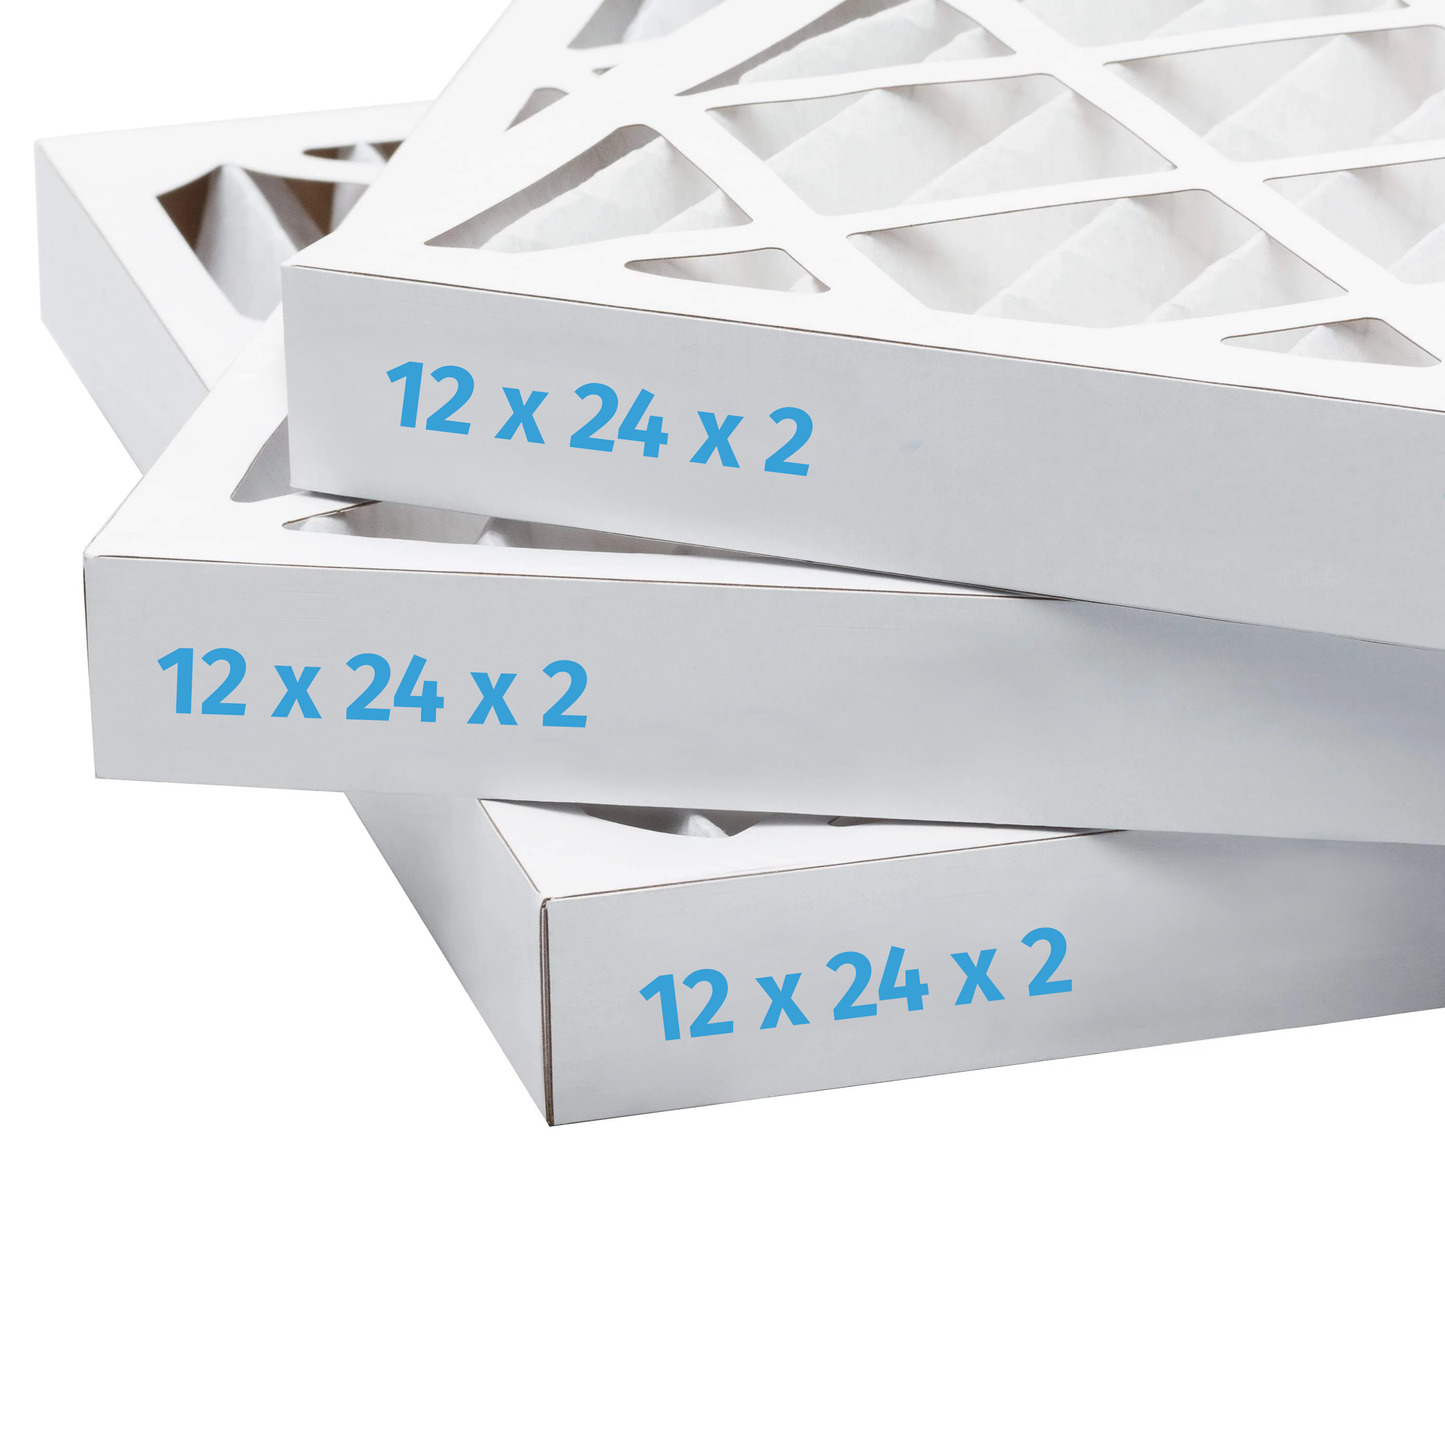 12x24x2 Air Filter - AC Furnace Filter